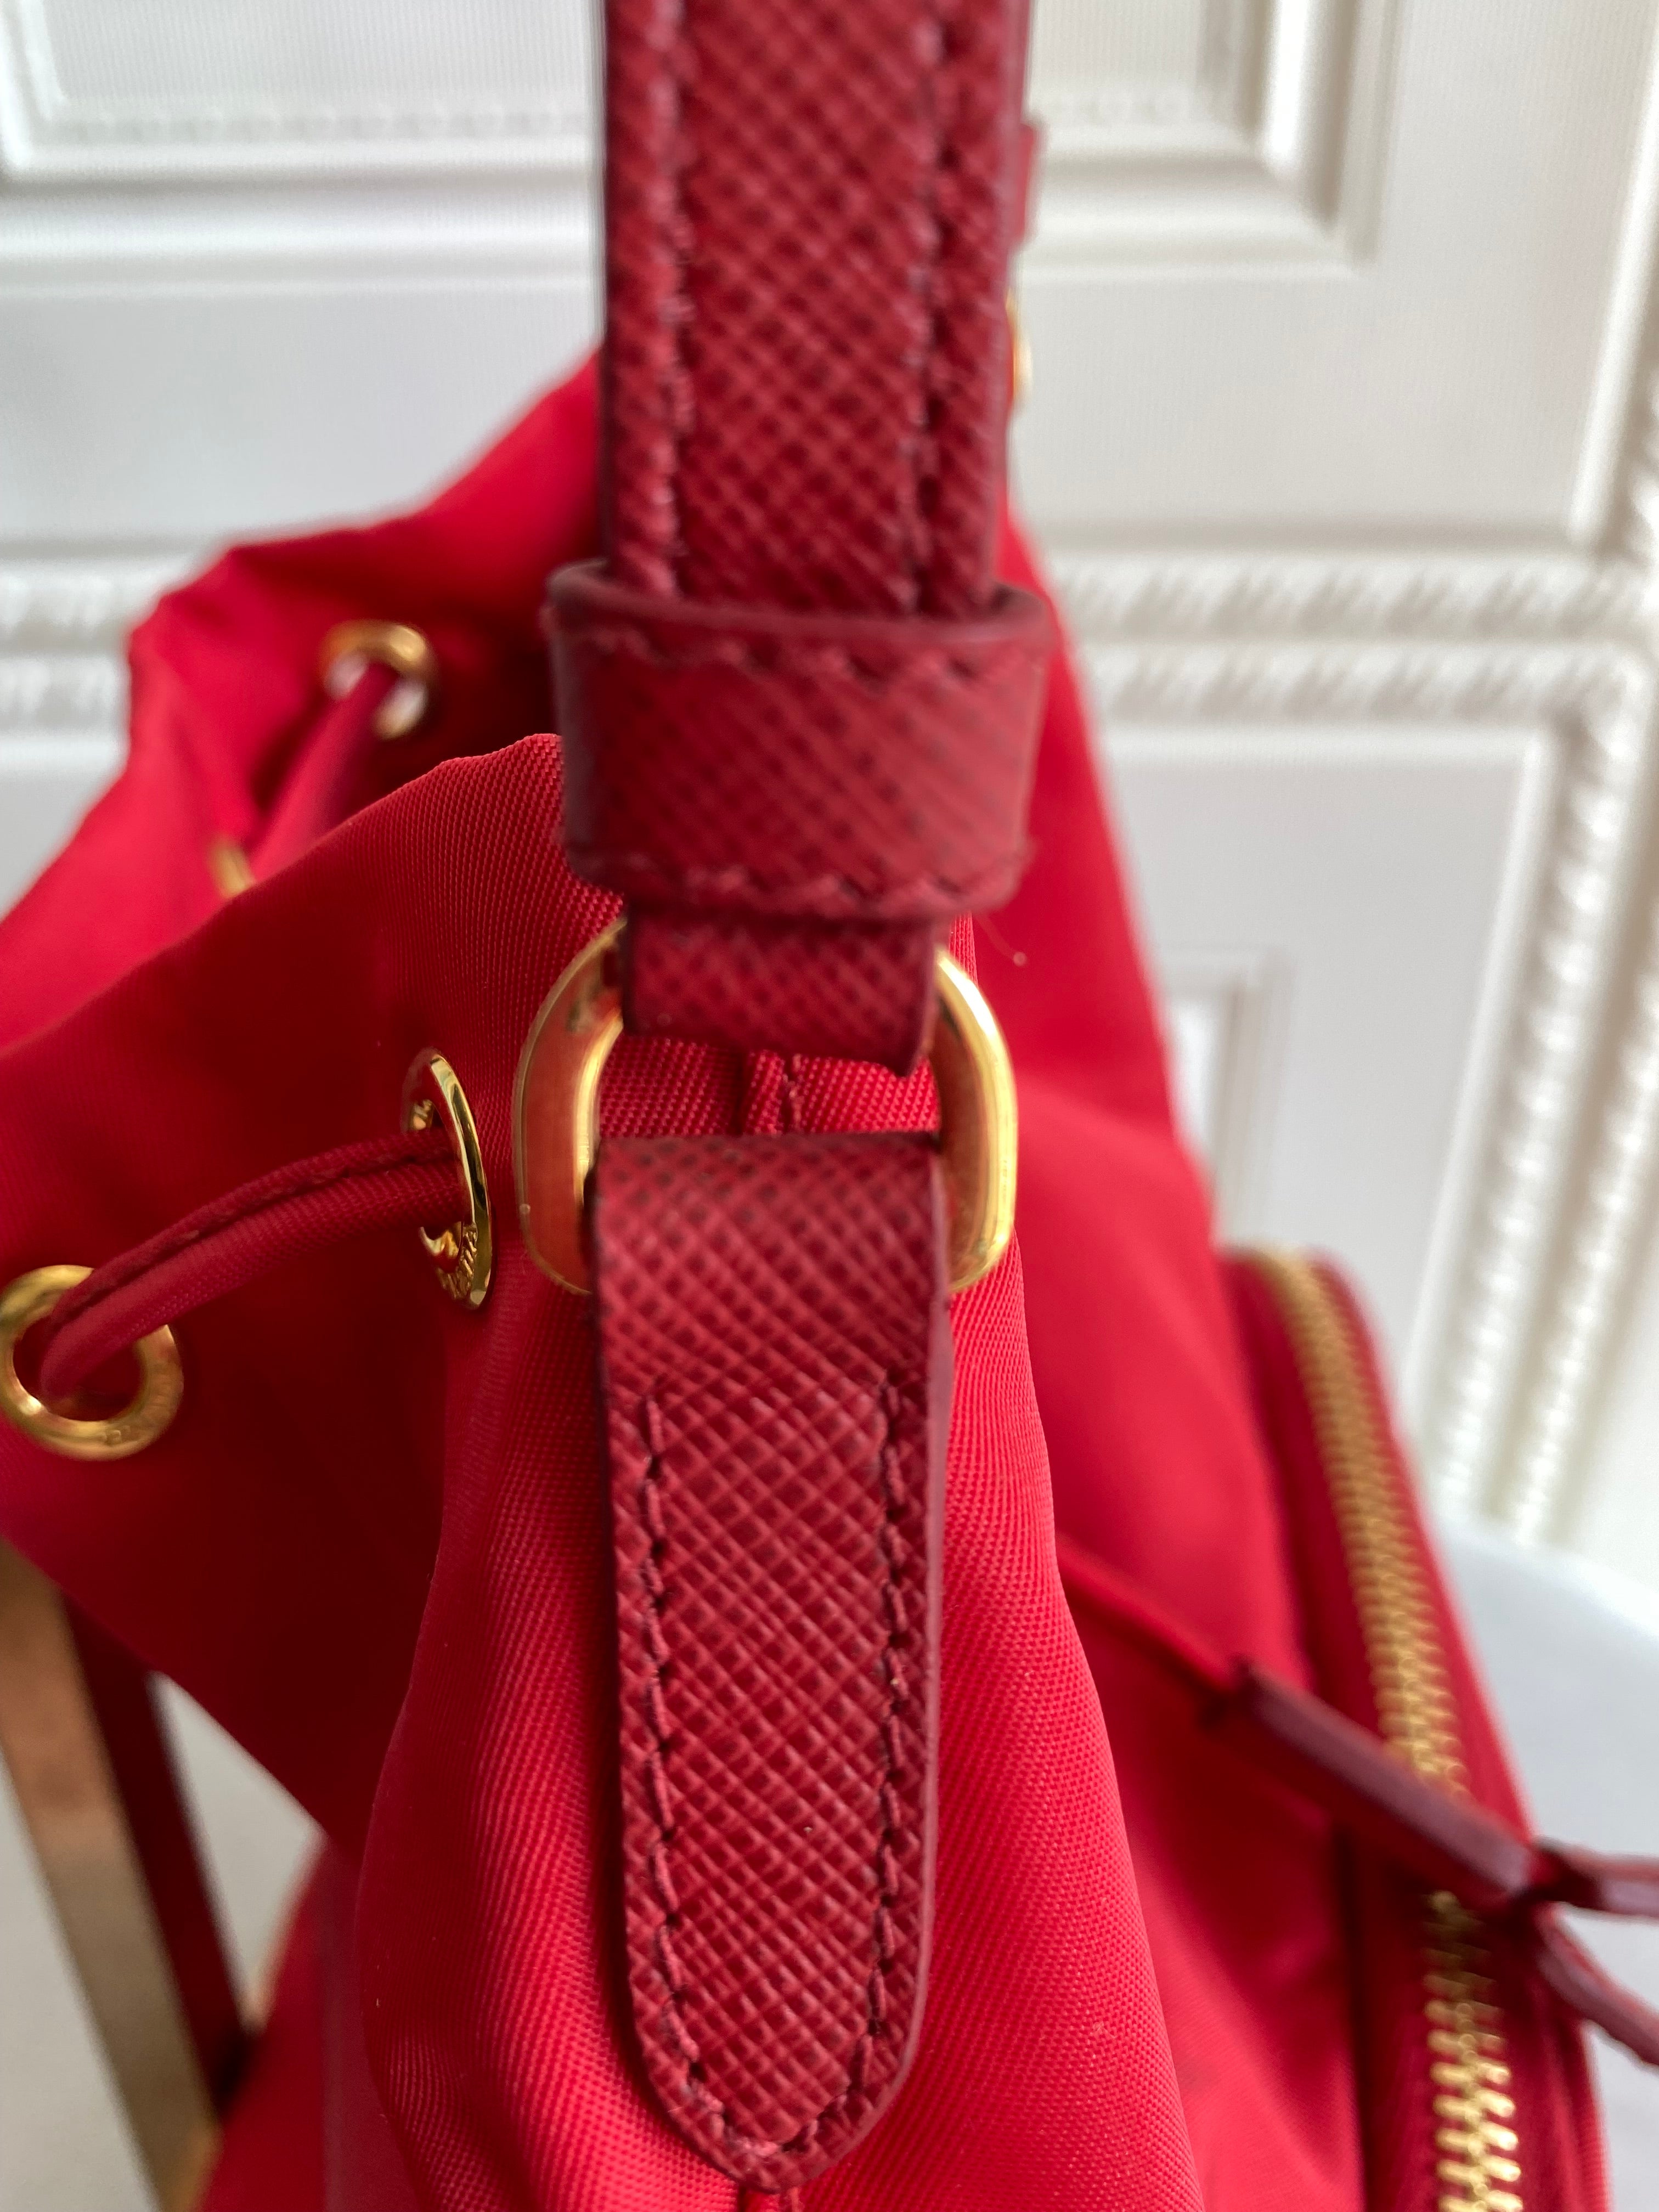 Prada Tessuto Handbag Mini Boston Bag Nylon Leather Khaki